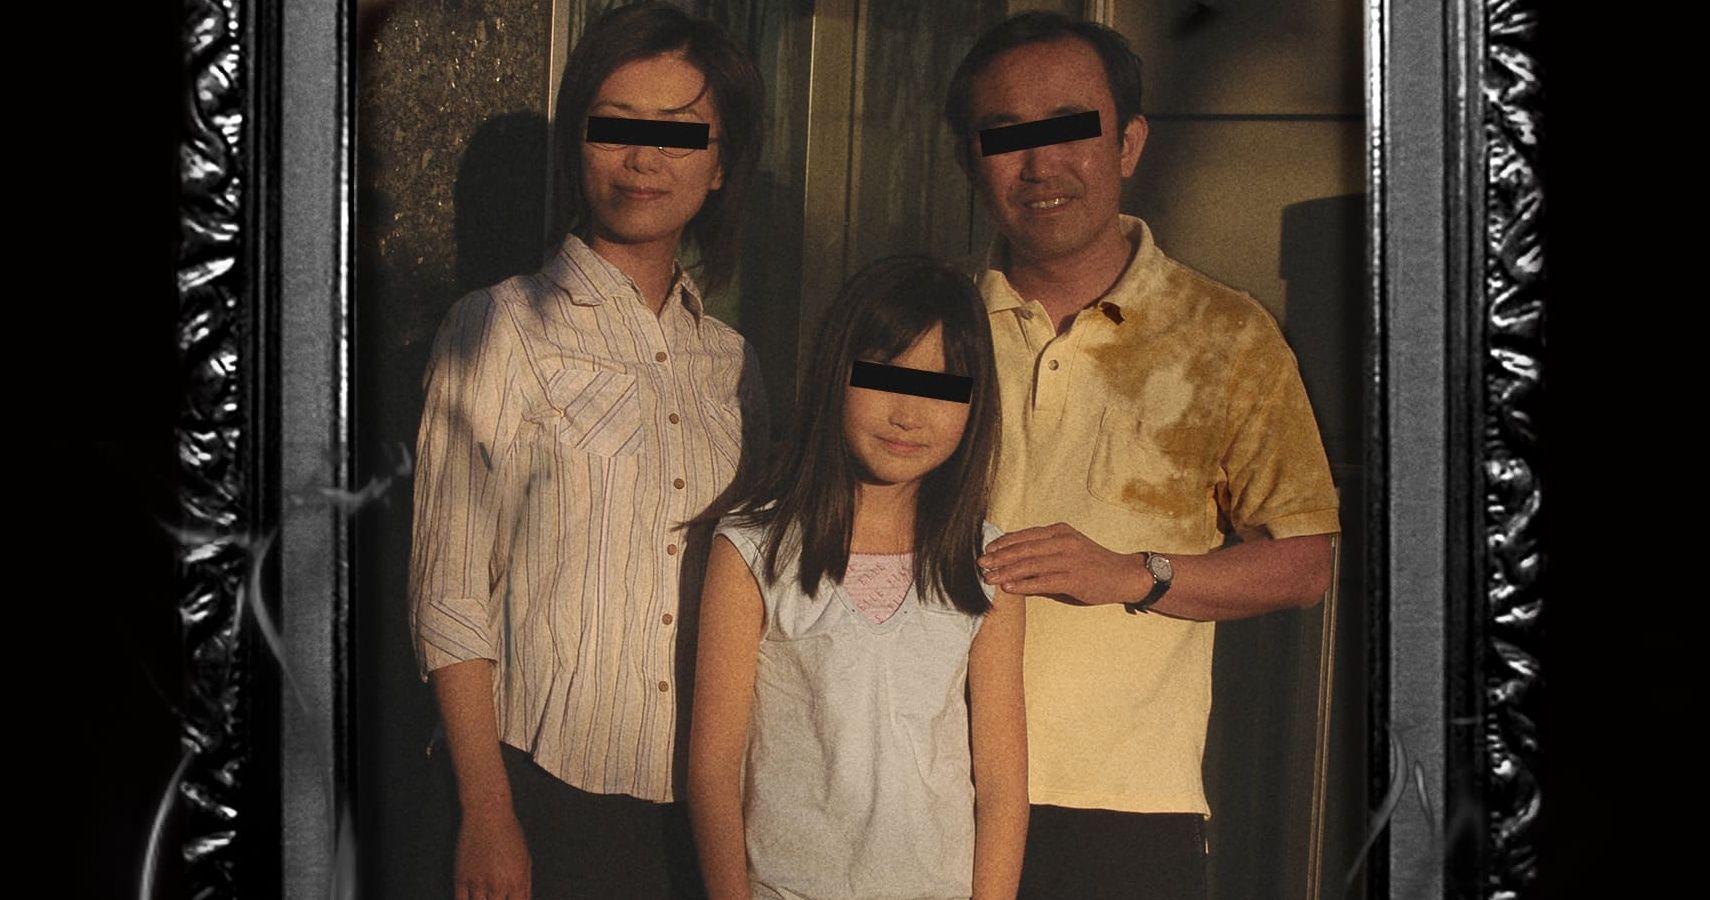 Family photo from Noroi: The Curse mockumentary